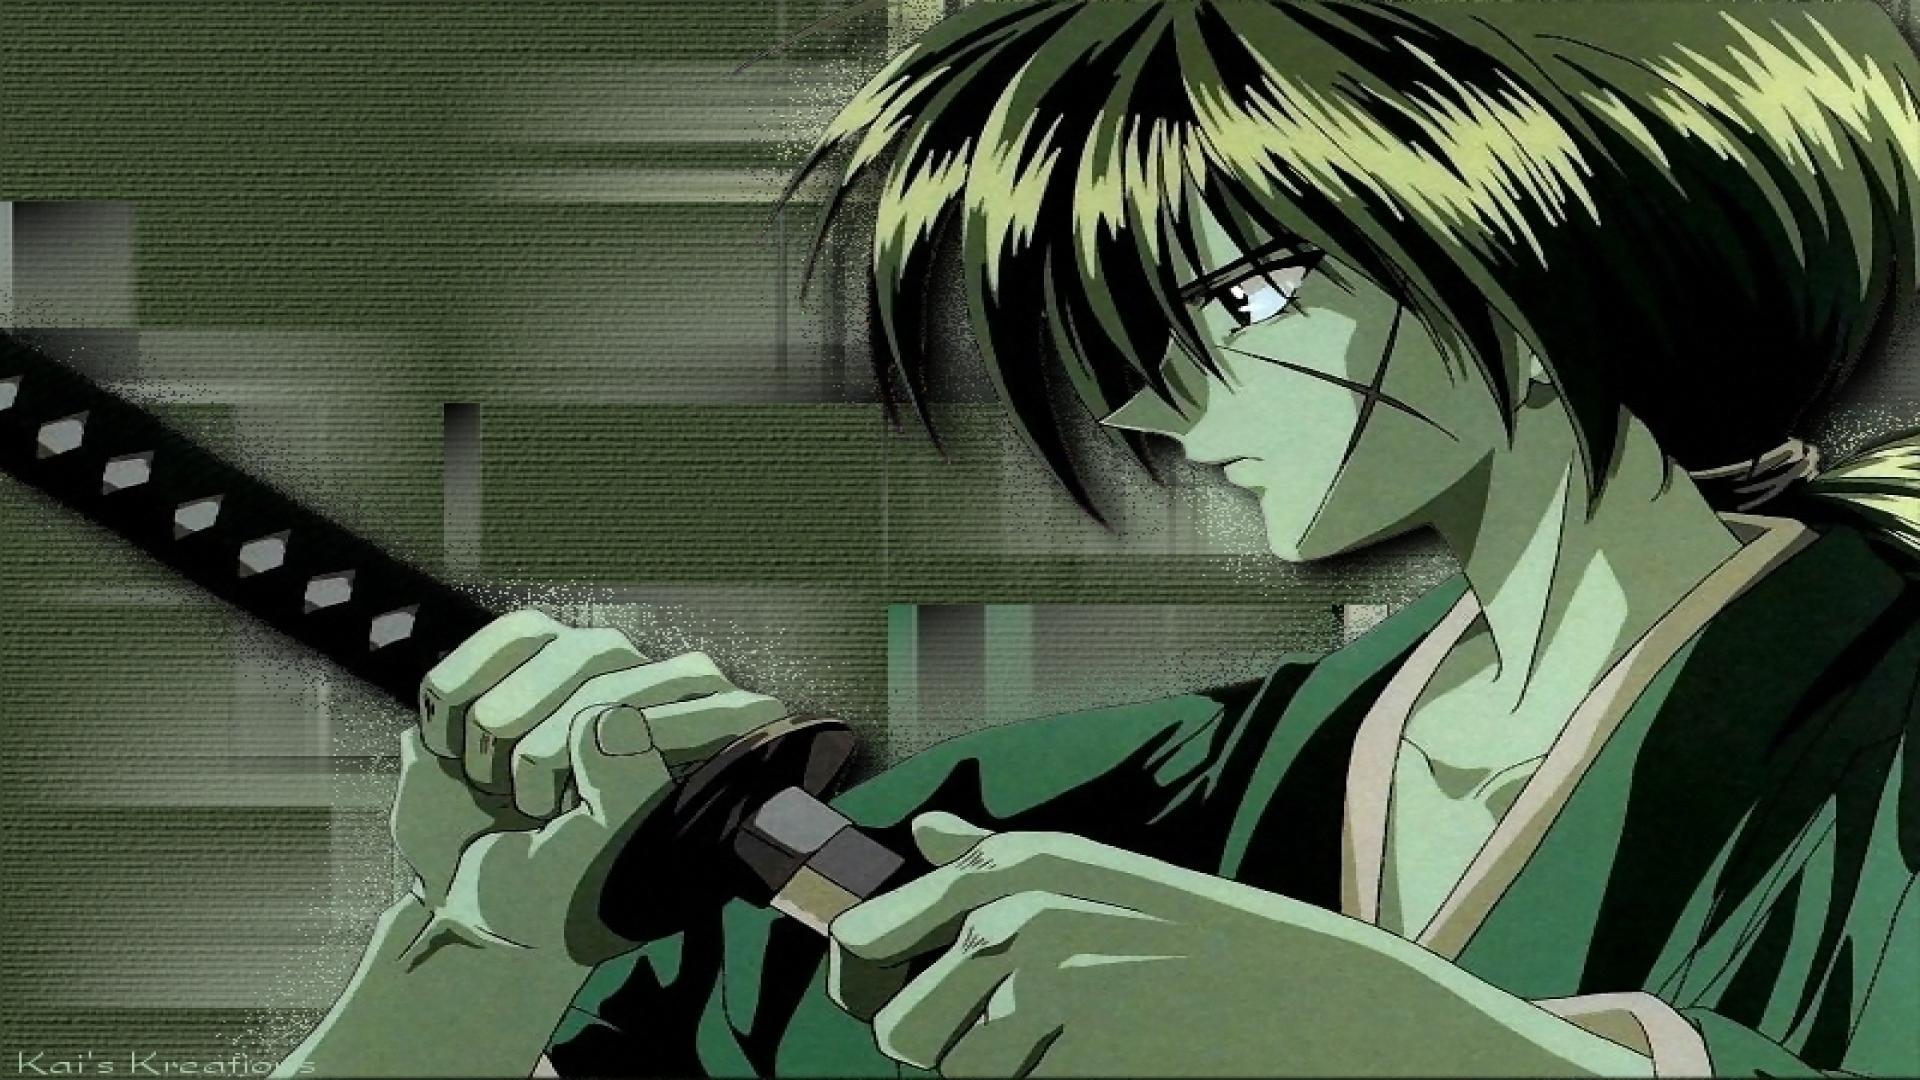 himura kenshin fan club image *Kenshin* HD wallpaper and background